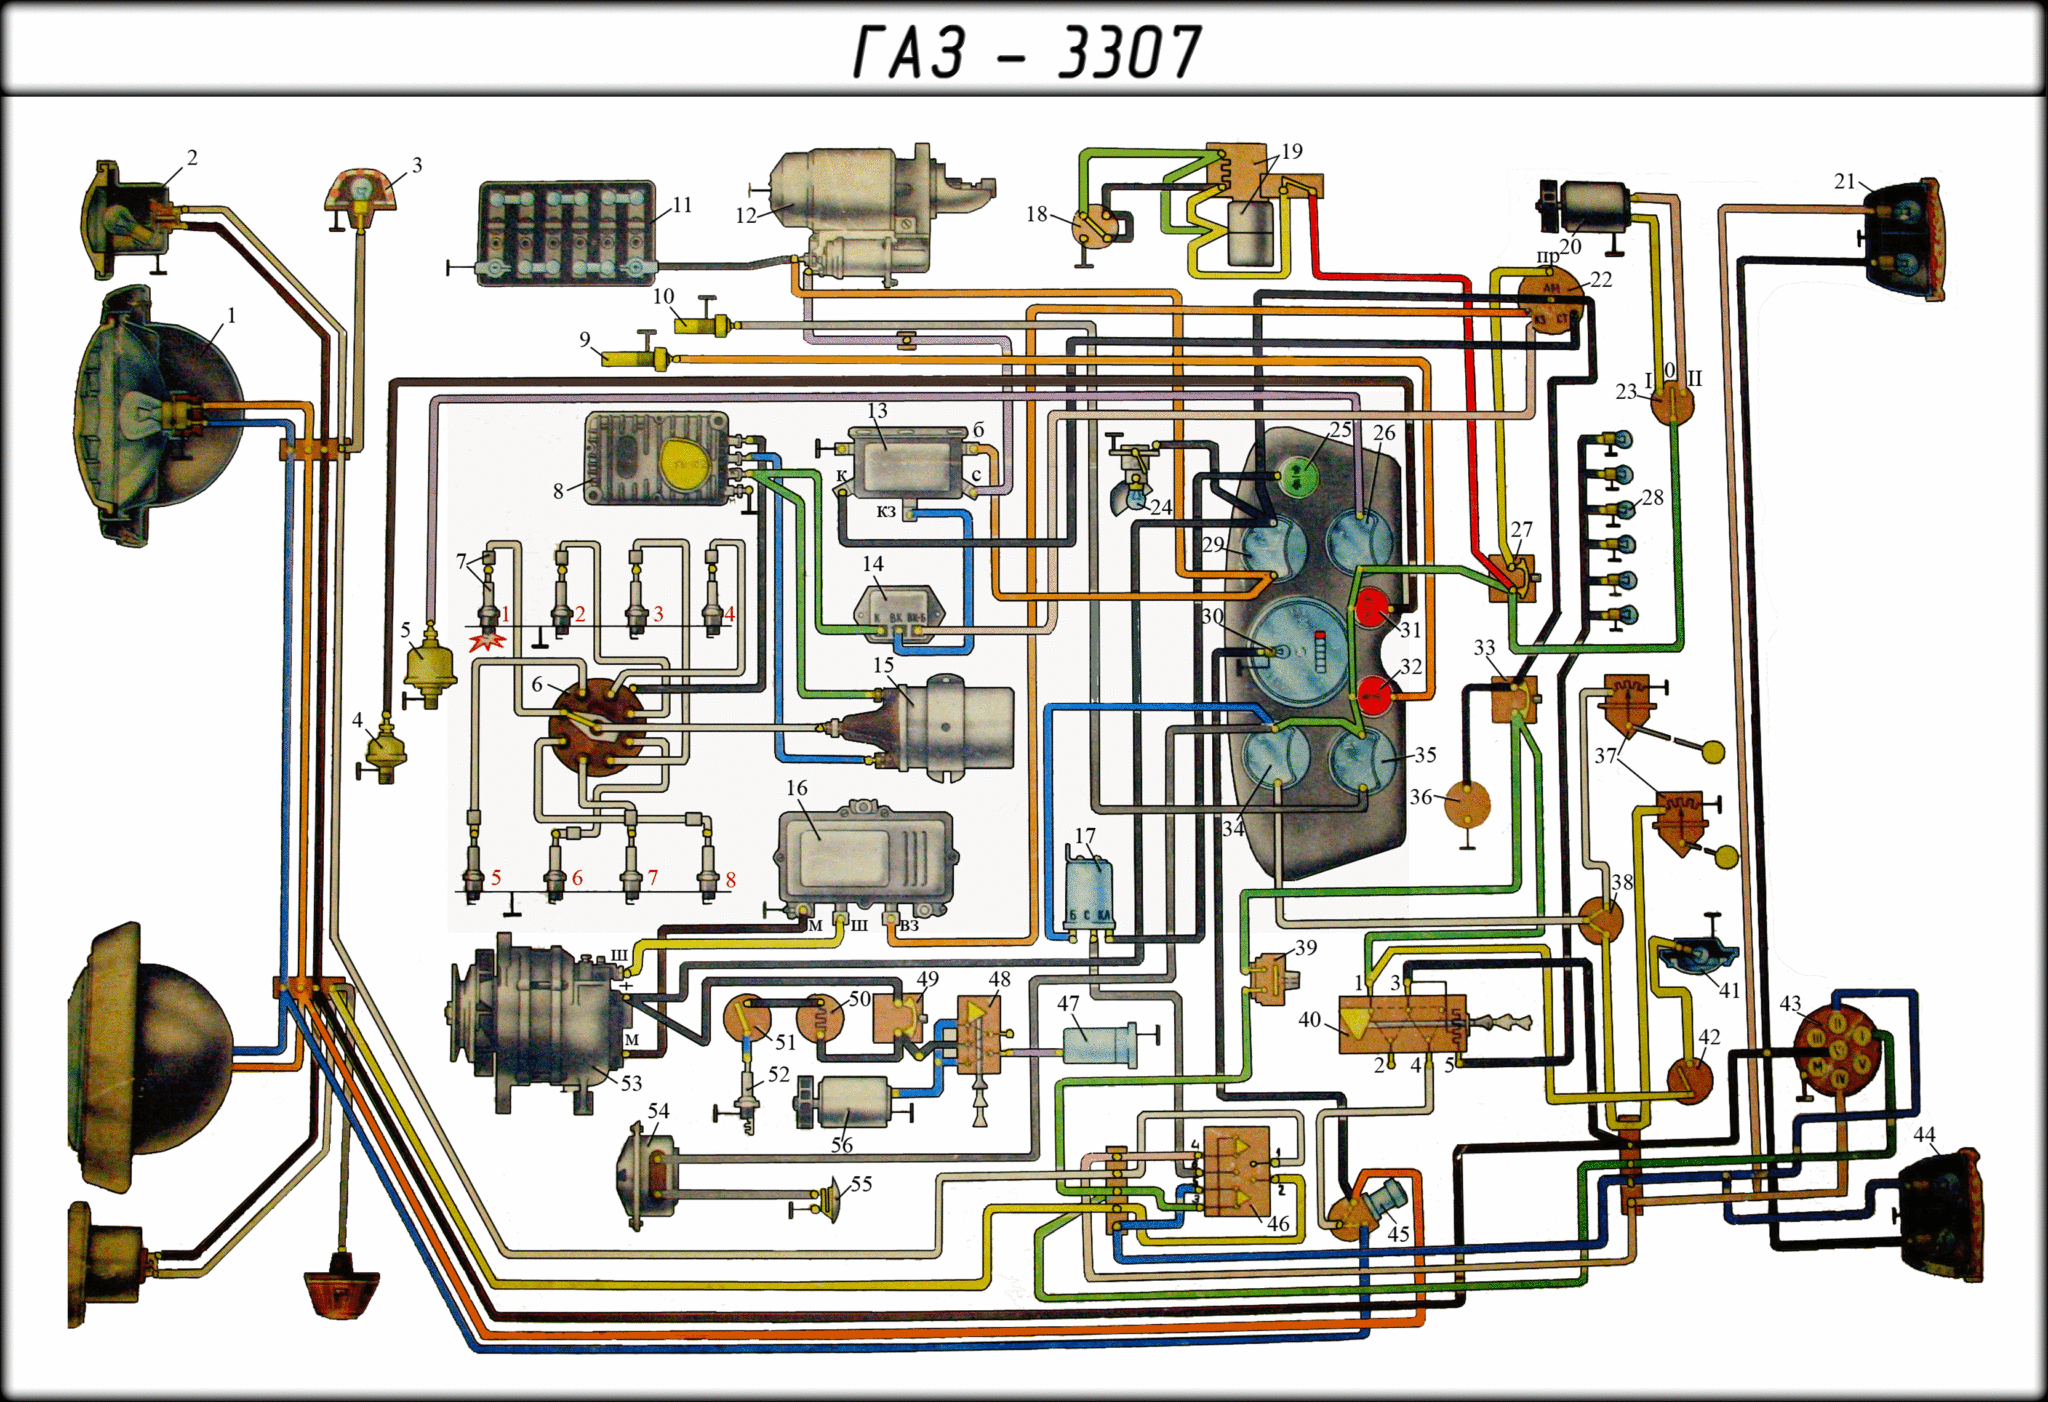 Схема электропроводки газ 3307 цветная с описанием